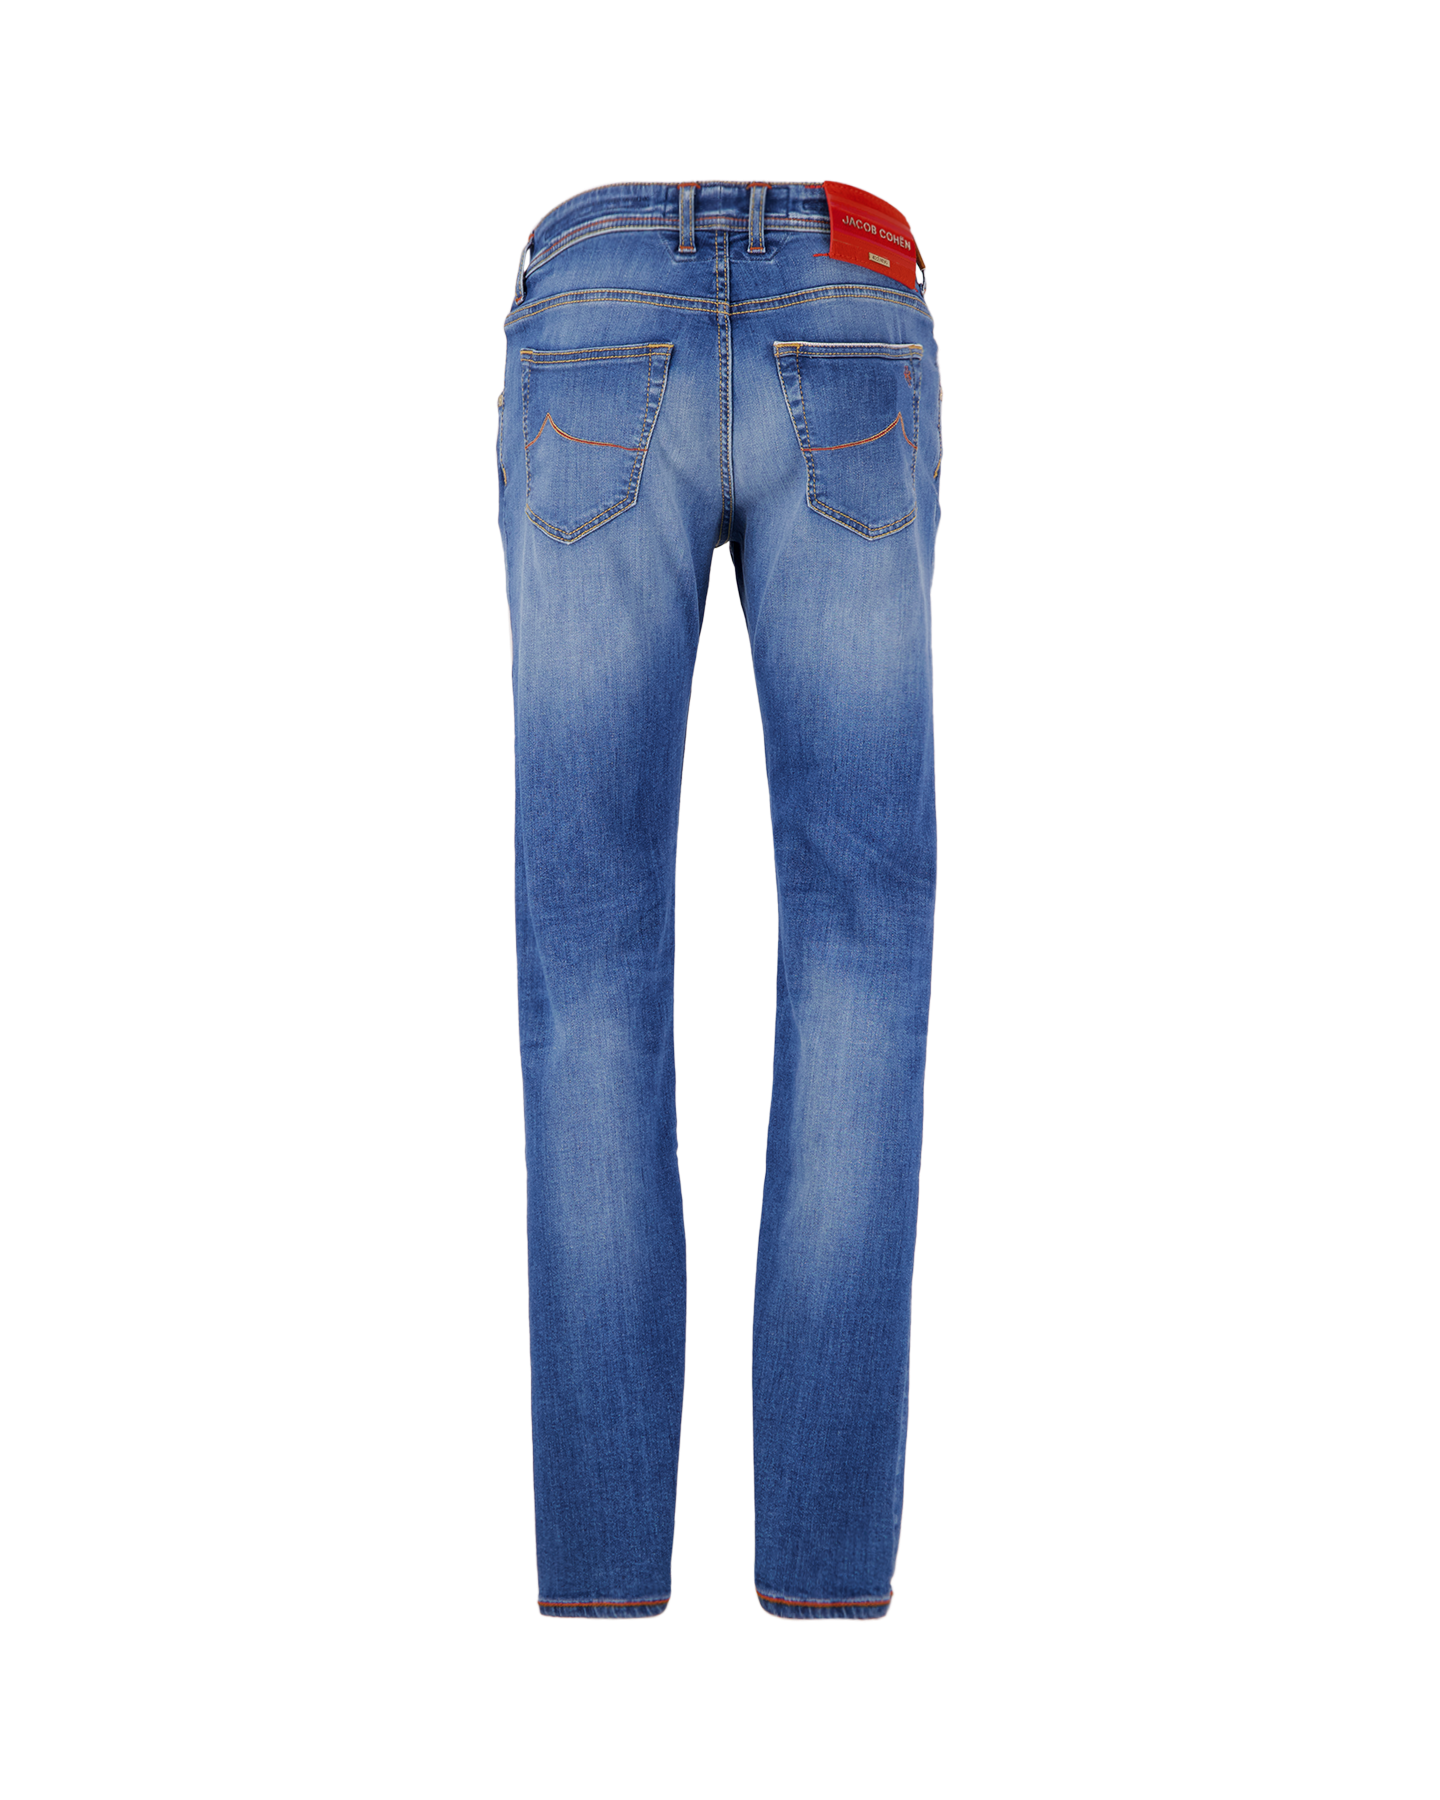 Jacob Cohen Nick Light-Blue Selvedge Limited-Edition Jeans 737D DENIM 2